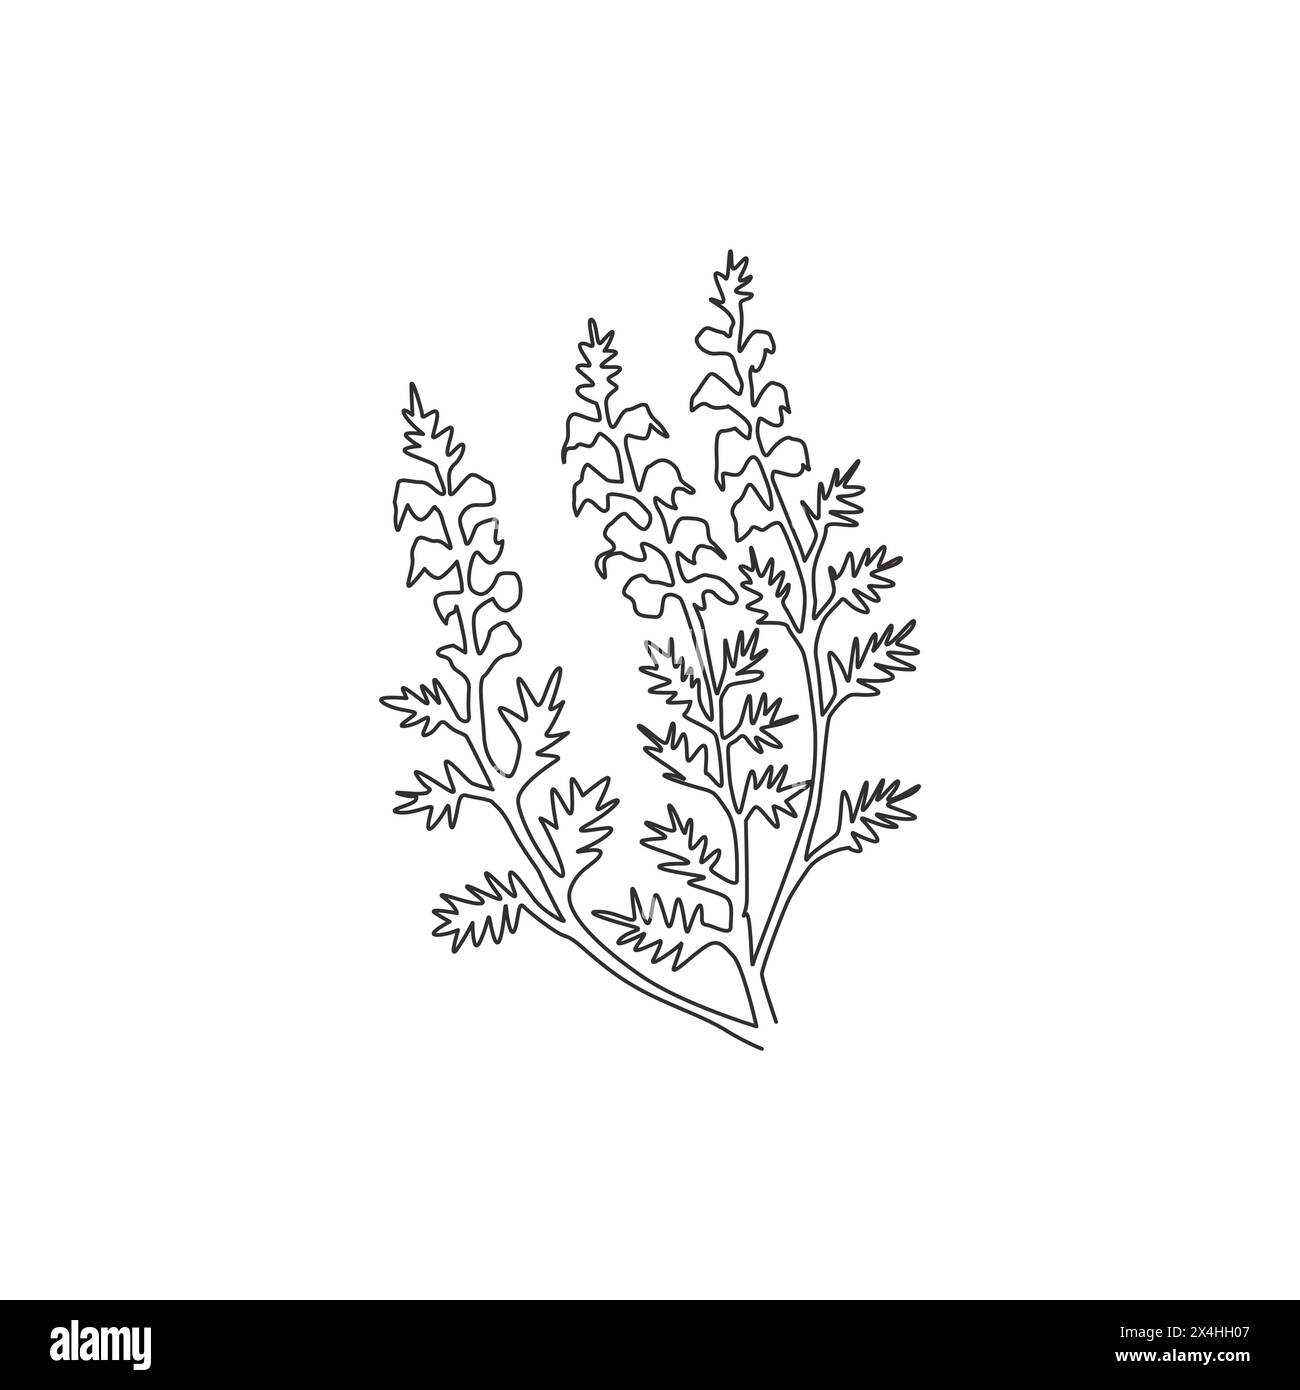 Eine durchgehende Linienzeichnung von Beauty Fresh Common Heather für Wohnkultur Wandbild Poster. Dekorative calluna vulgaris Blume für Einladungswagen Stock Vektor